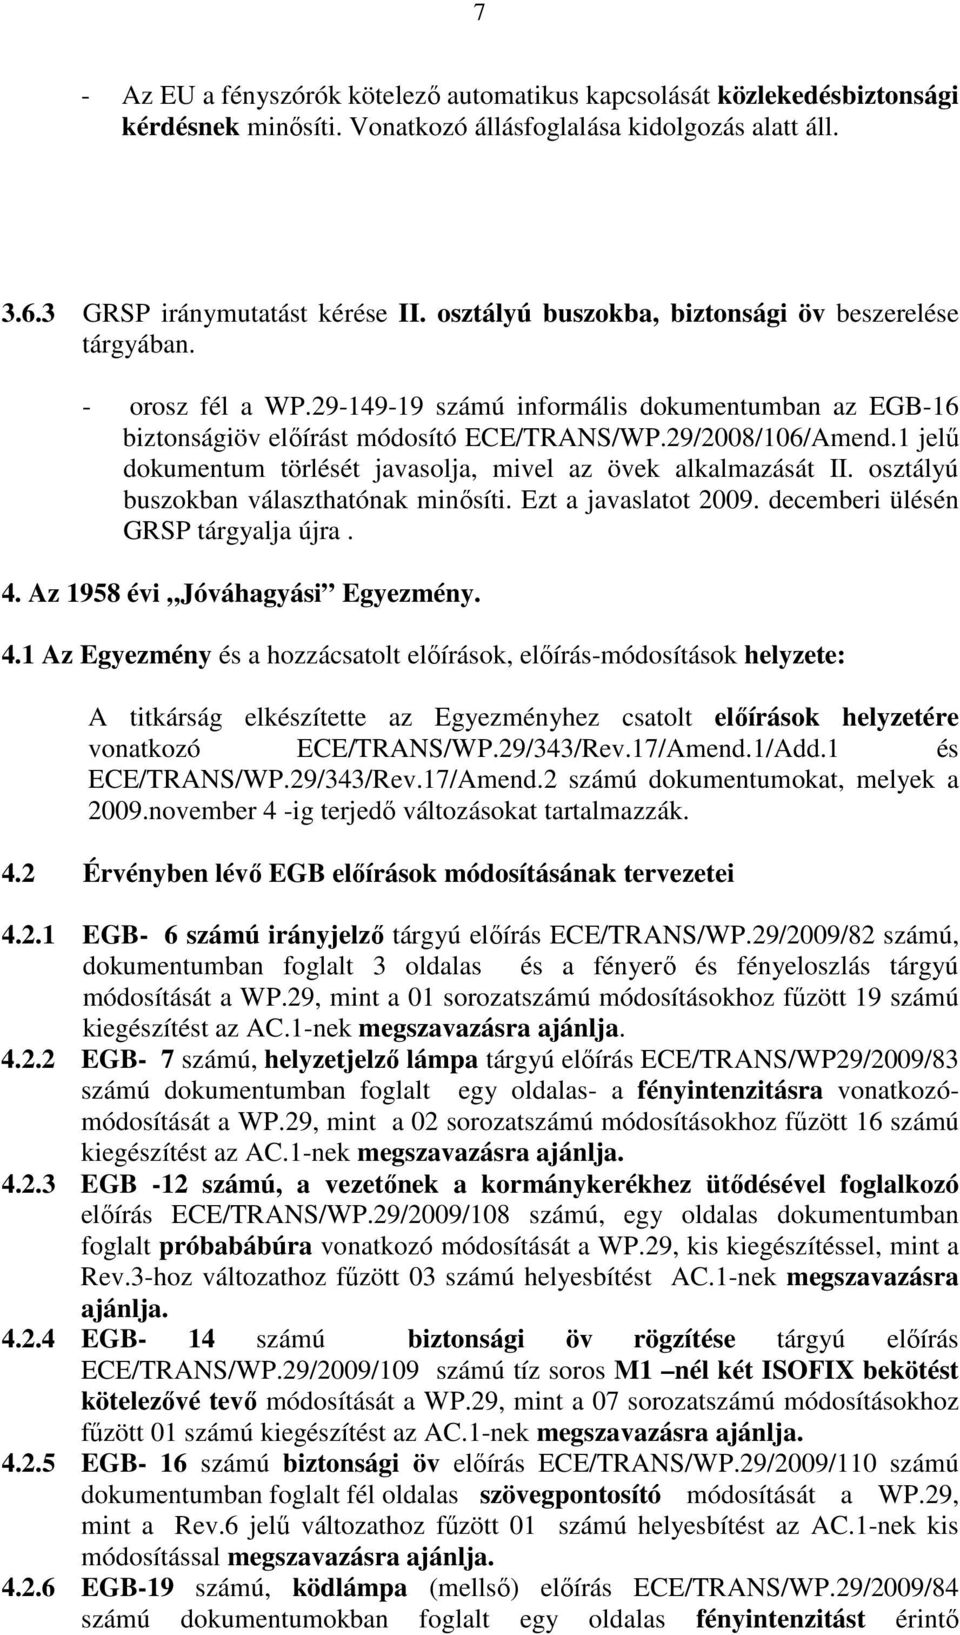 1 jelő dokumentum törlését javasolja, mivel az övek alkalmazását II. osztályú buszokban választhatónak minısíti. Ezt a javaslatot 2009. decemberi ülésén GRSP tárgyalja újra. 4.